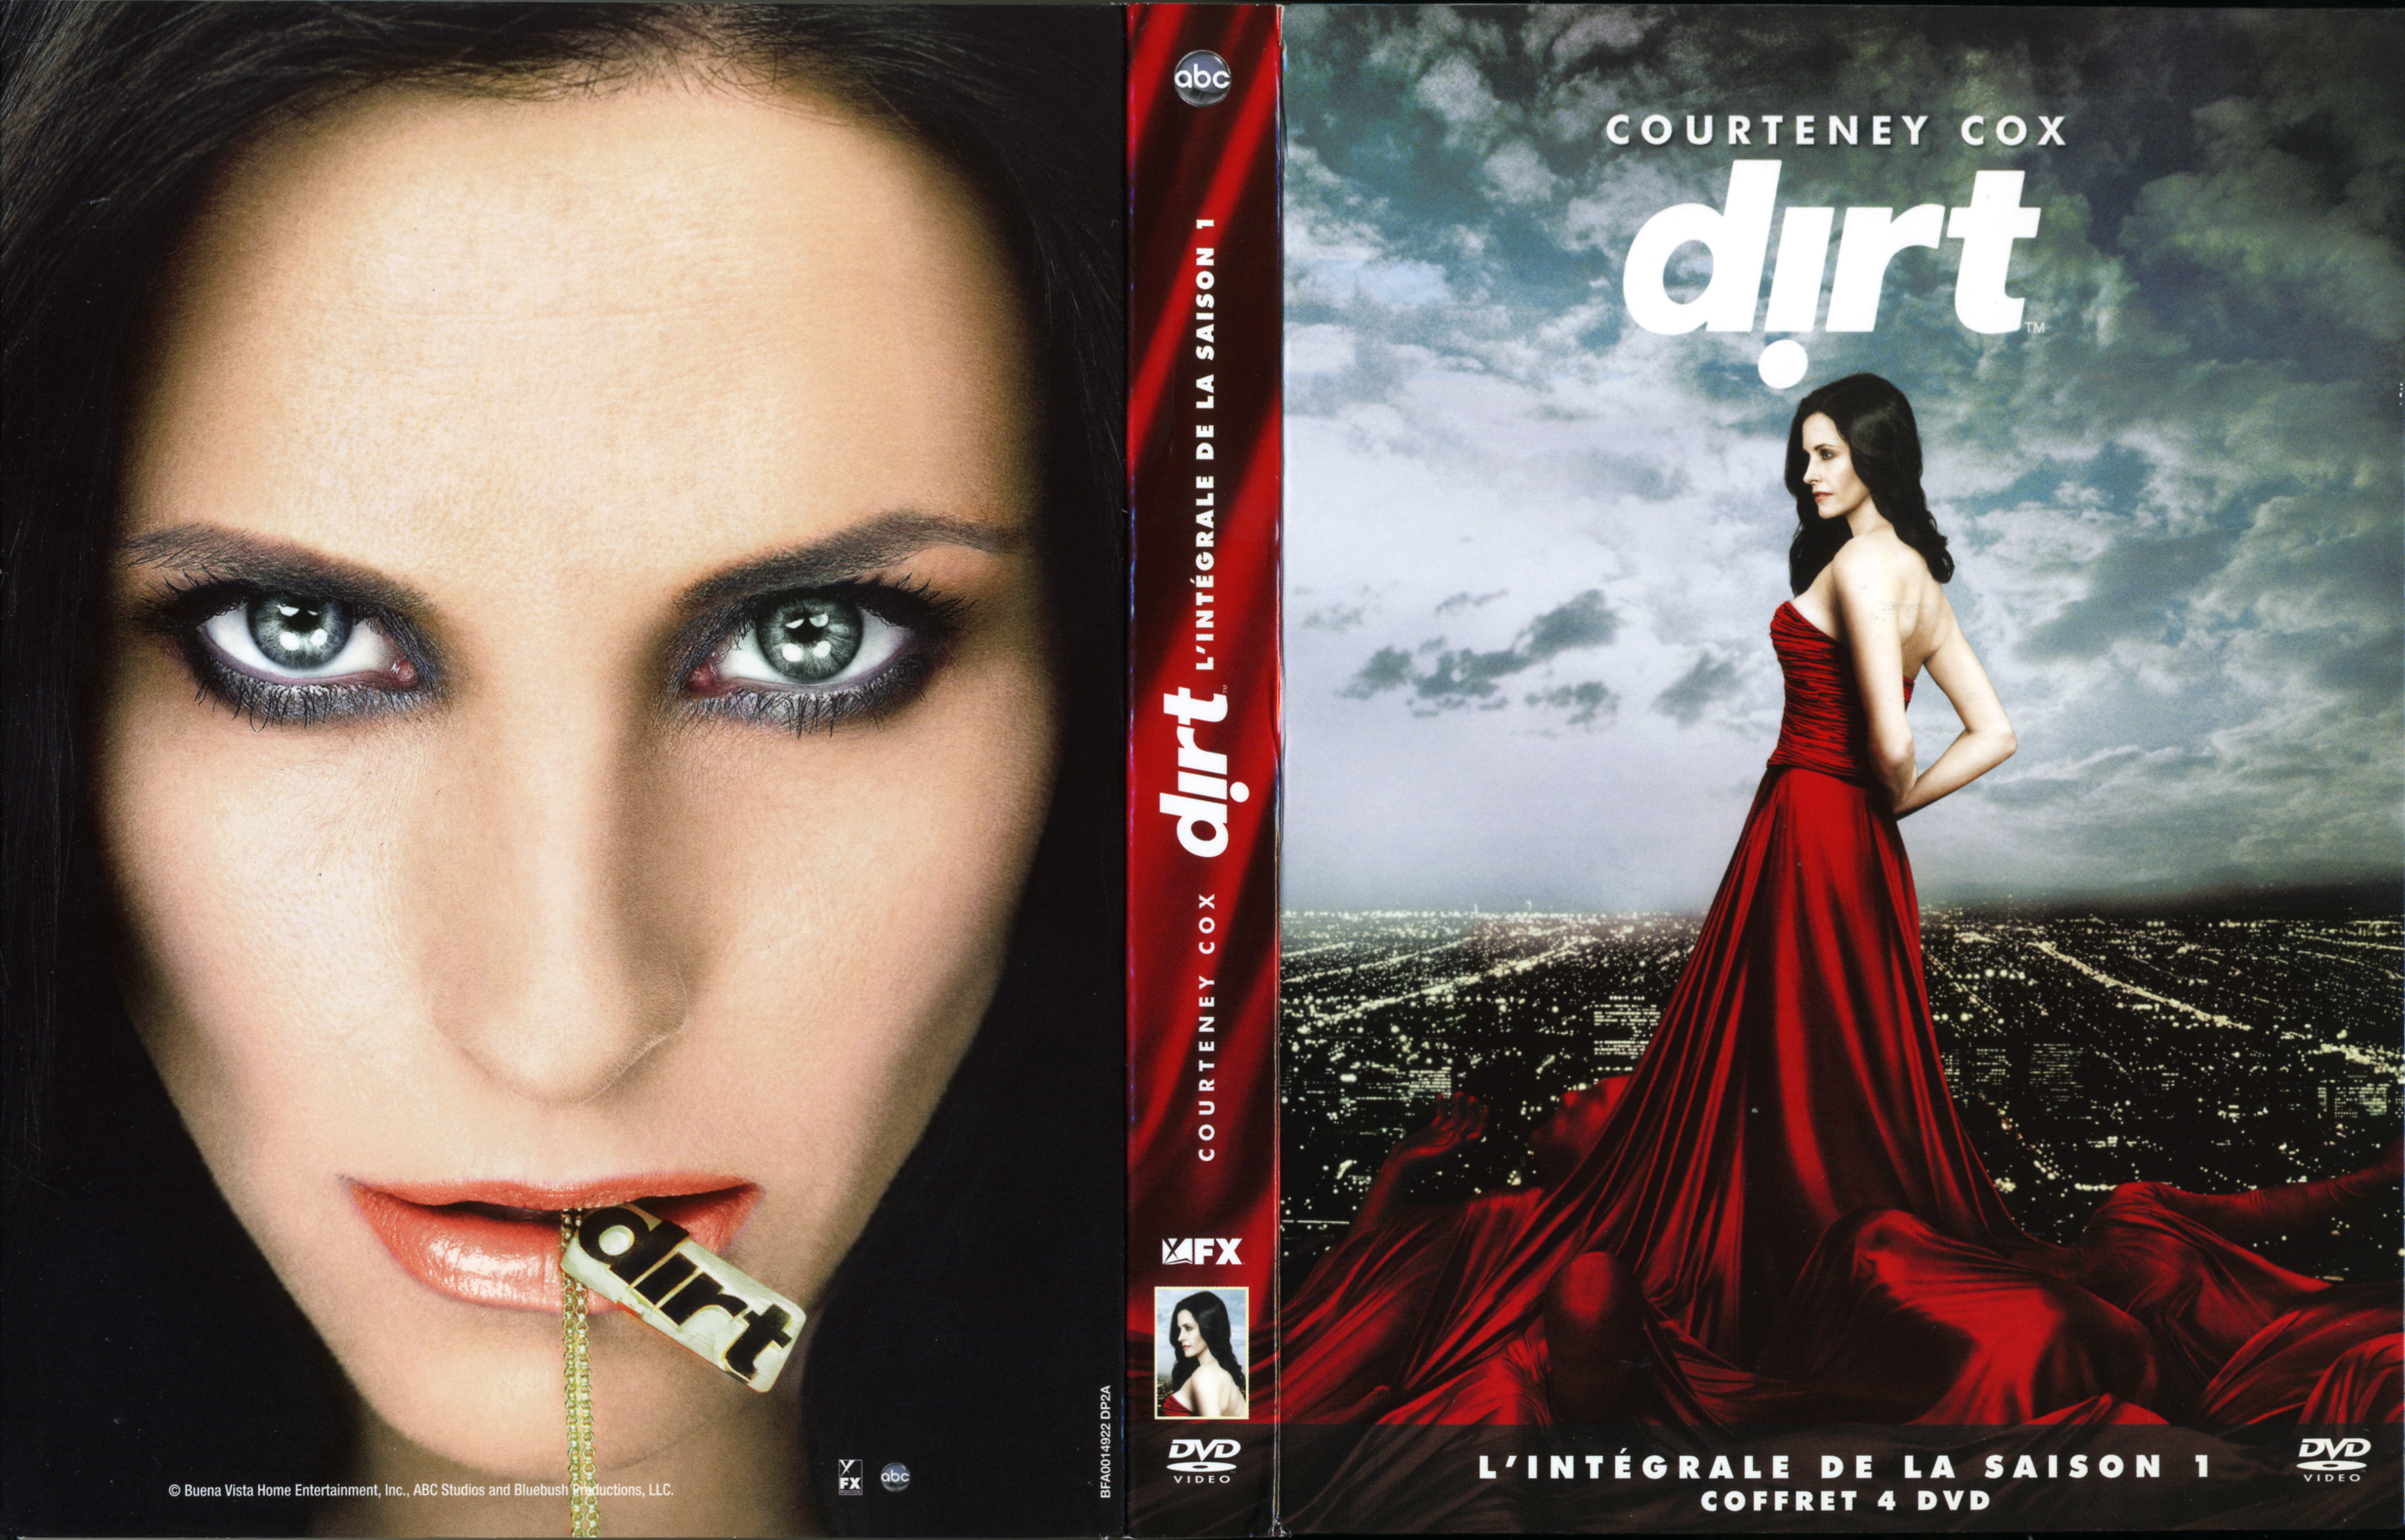 Jaquette DVD Dirt Saison 1 COFFRET v2